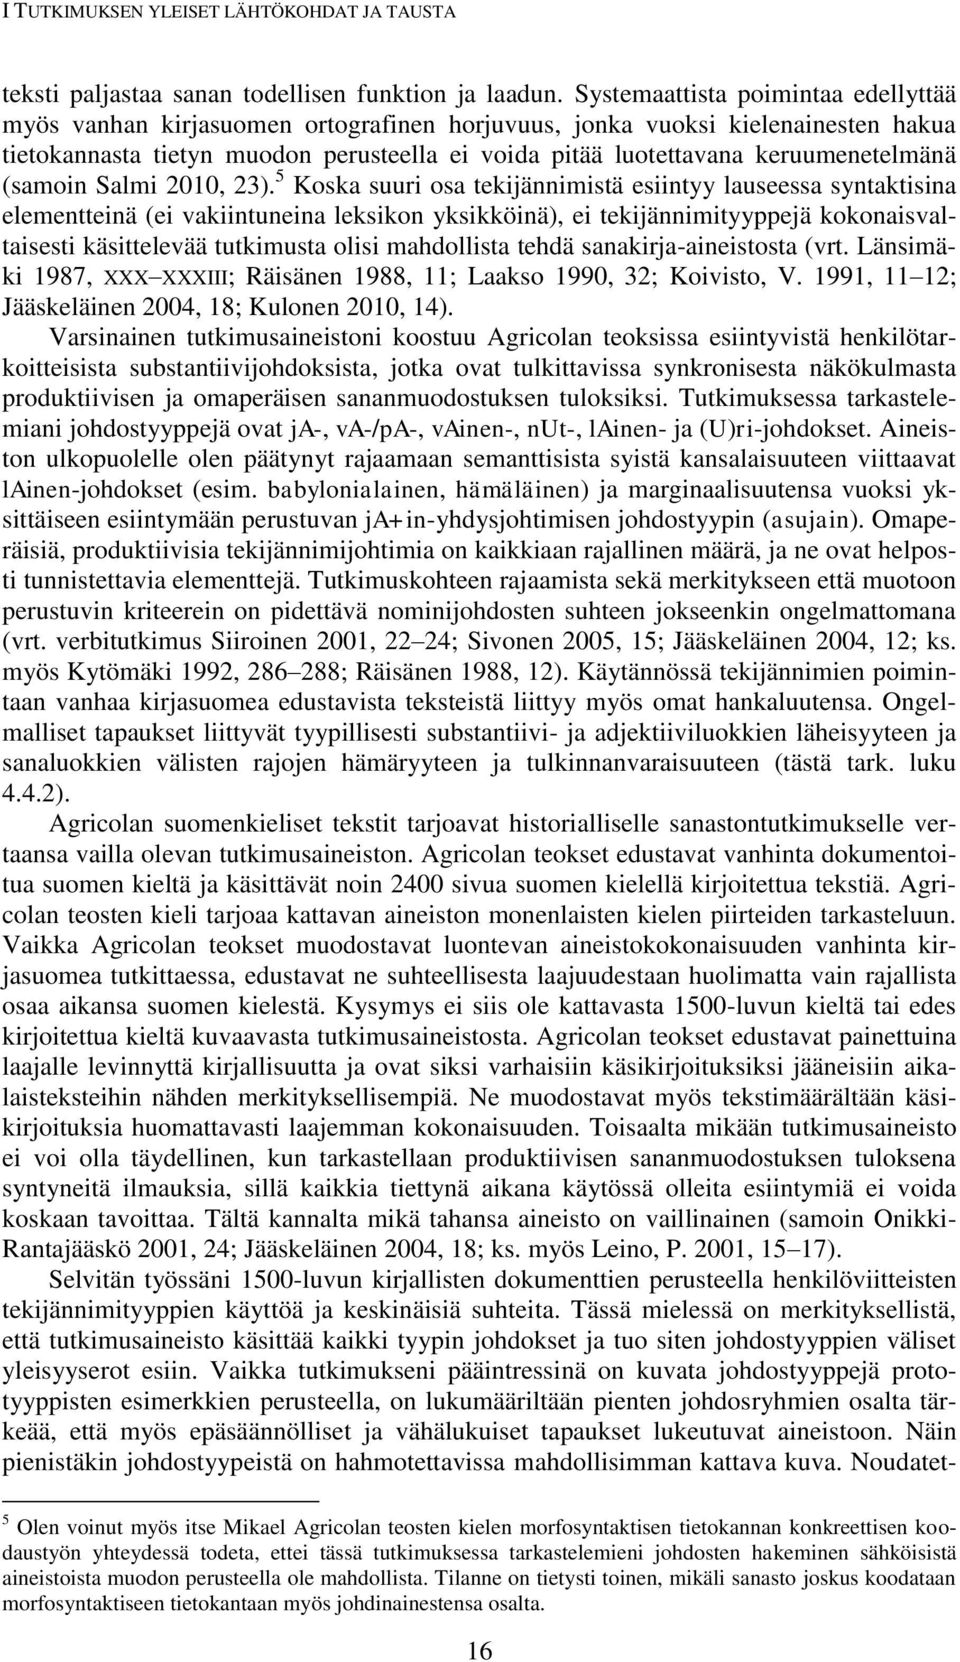 keruumenetelmänä (samoin Salmi 2010, 23).